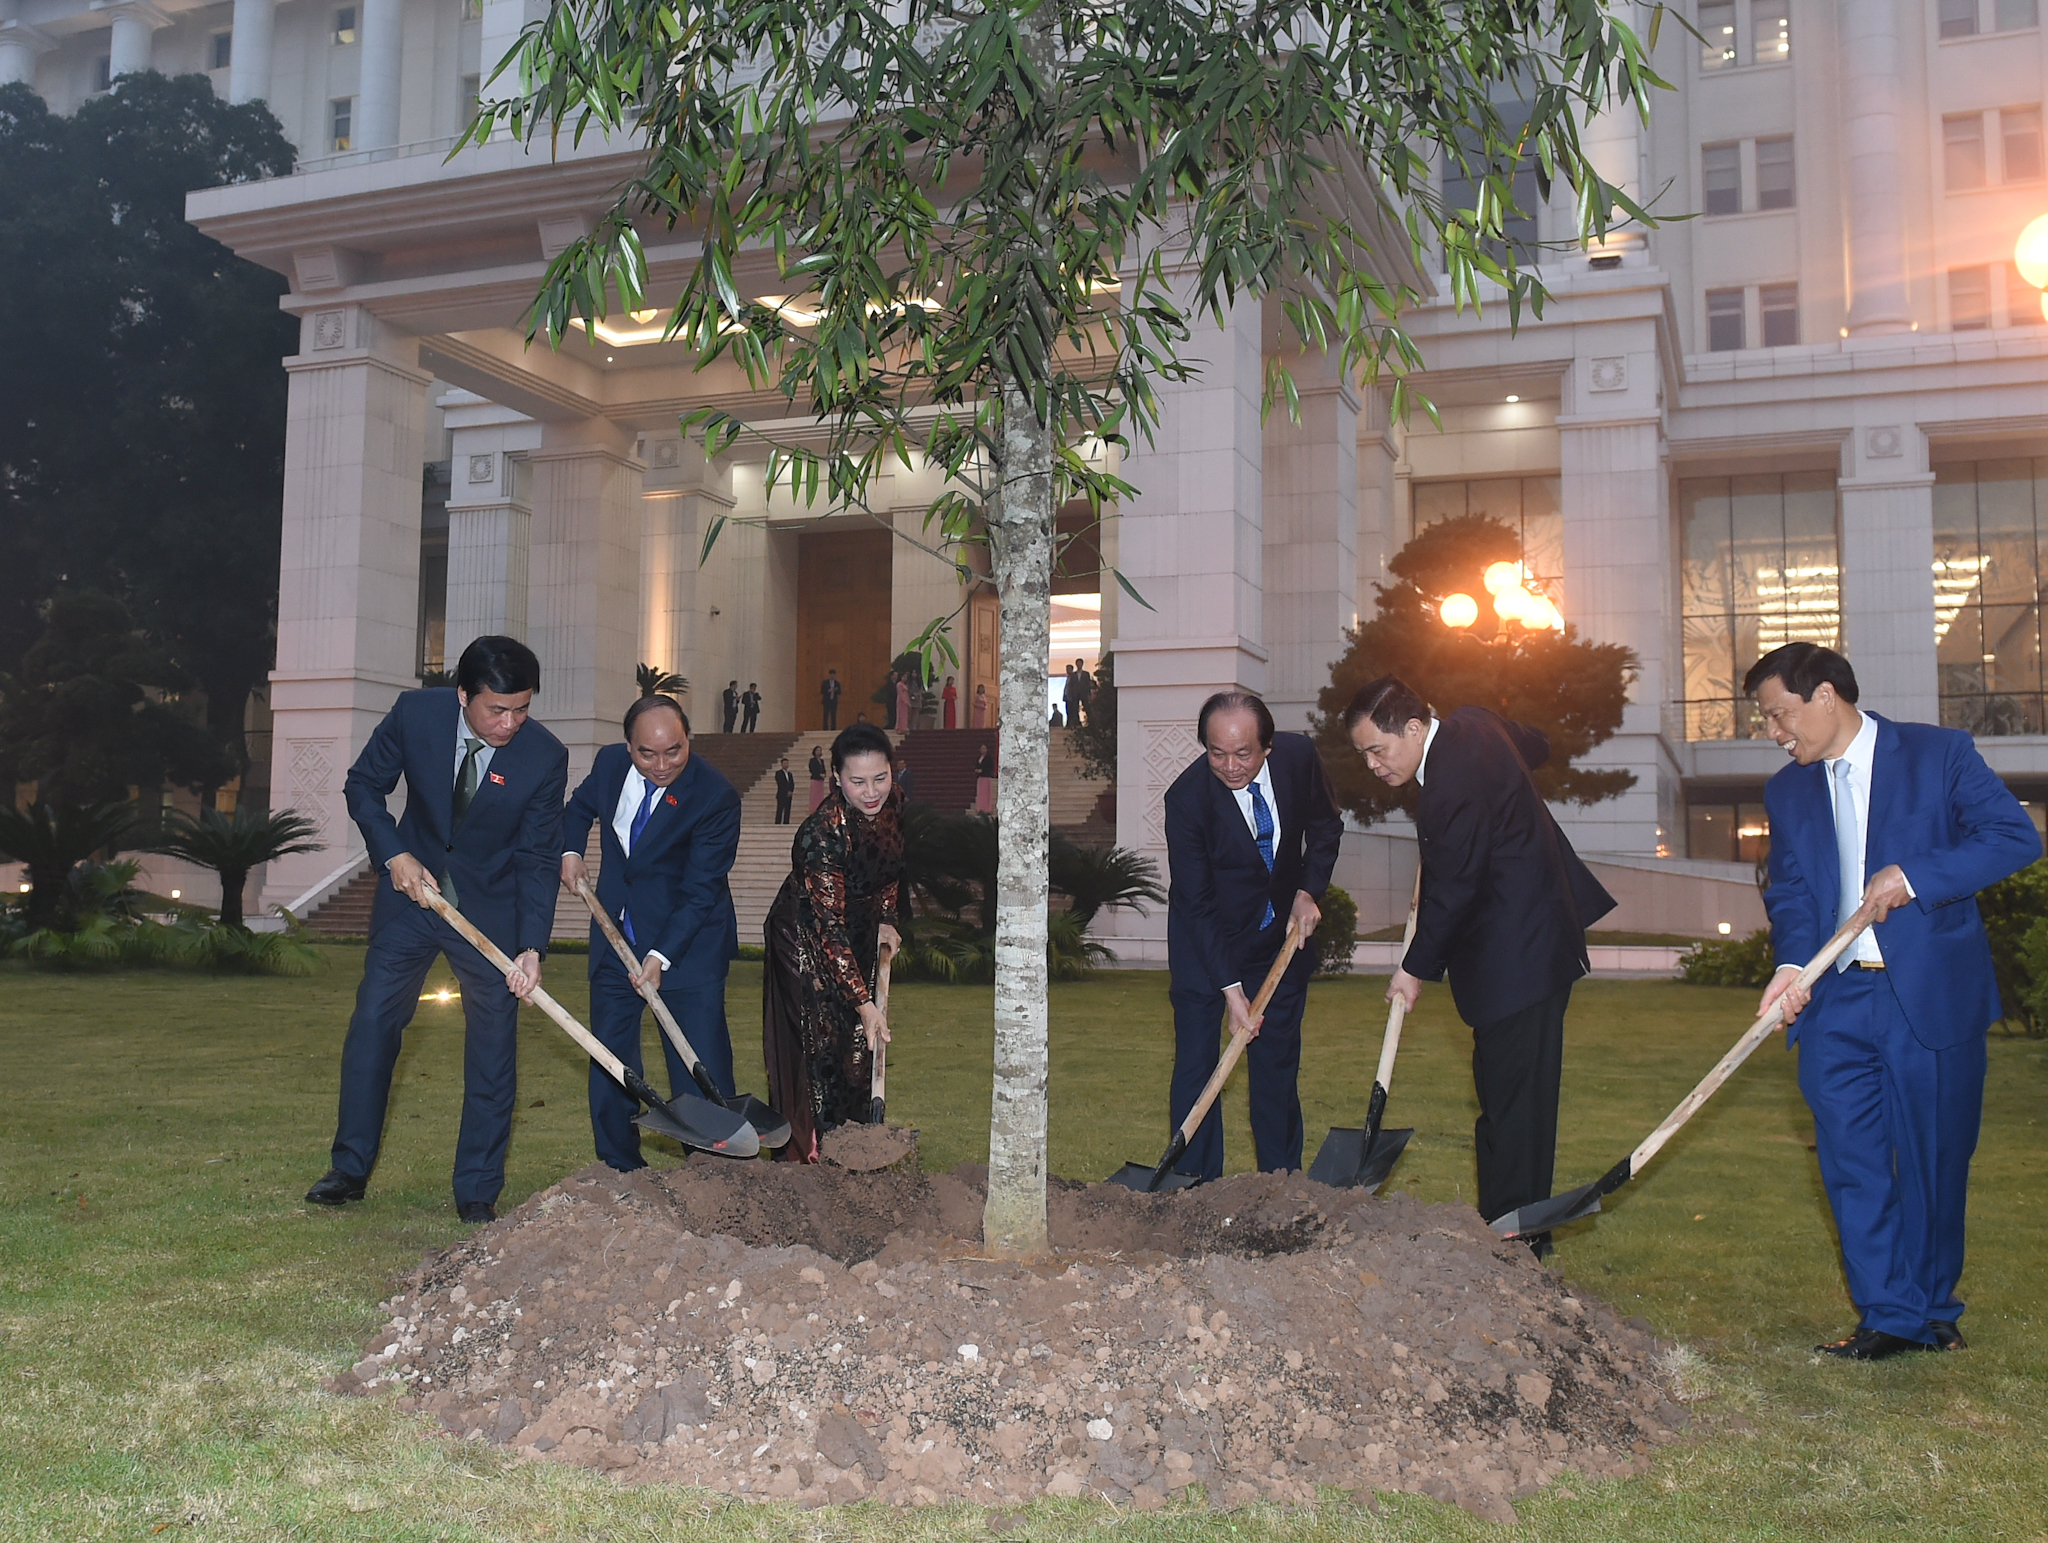 Thủ tướng Nguyễn Xuân Phúc, Chủ tịch Quốc hội Nguyễn Thị Kim Ngân cùng các đại biểu trồng cây lưu niệm tại Văn phòng Chính phủ. Ảnh: VGP/Quang Hiếu